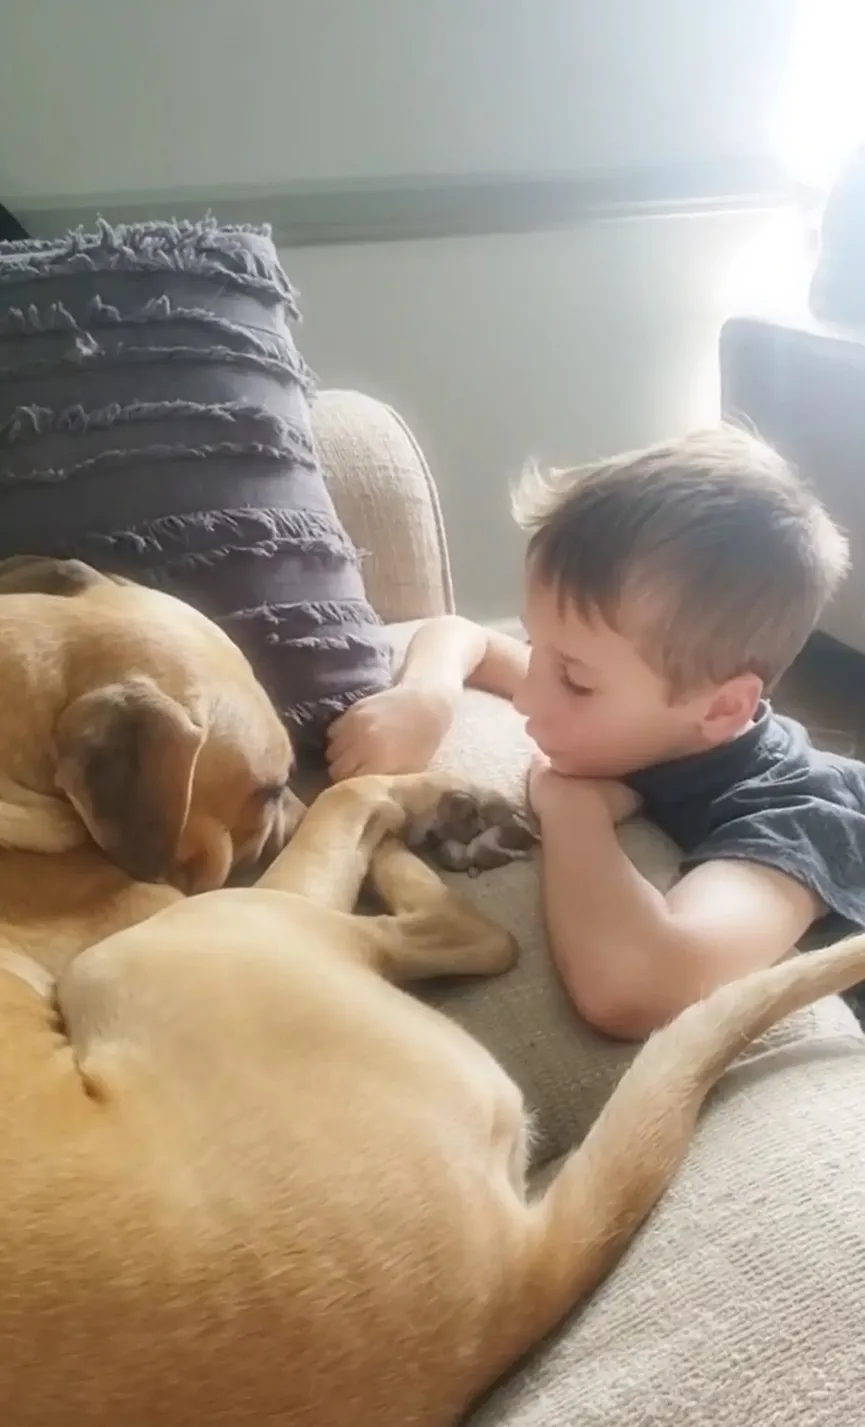 7-jarige jongen adopteert getraumatiseerde hond en stelt hem gerust- "We houden zoveel van je" 4